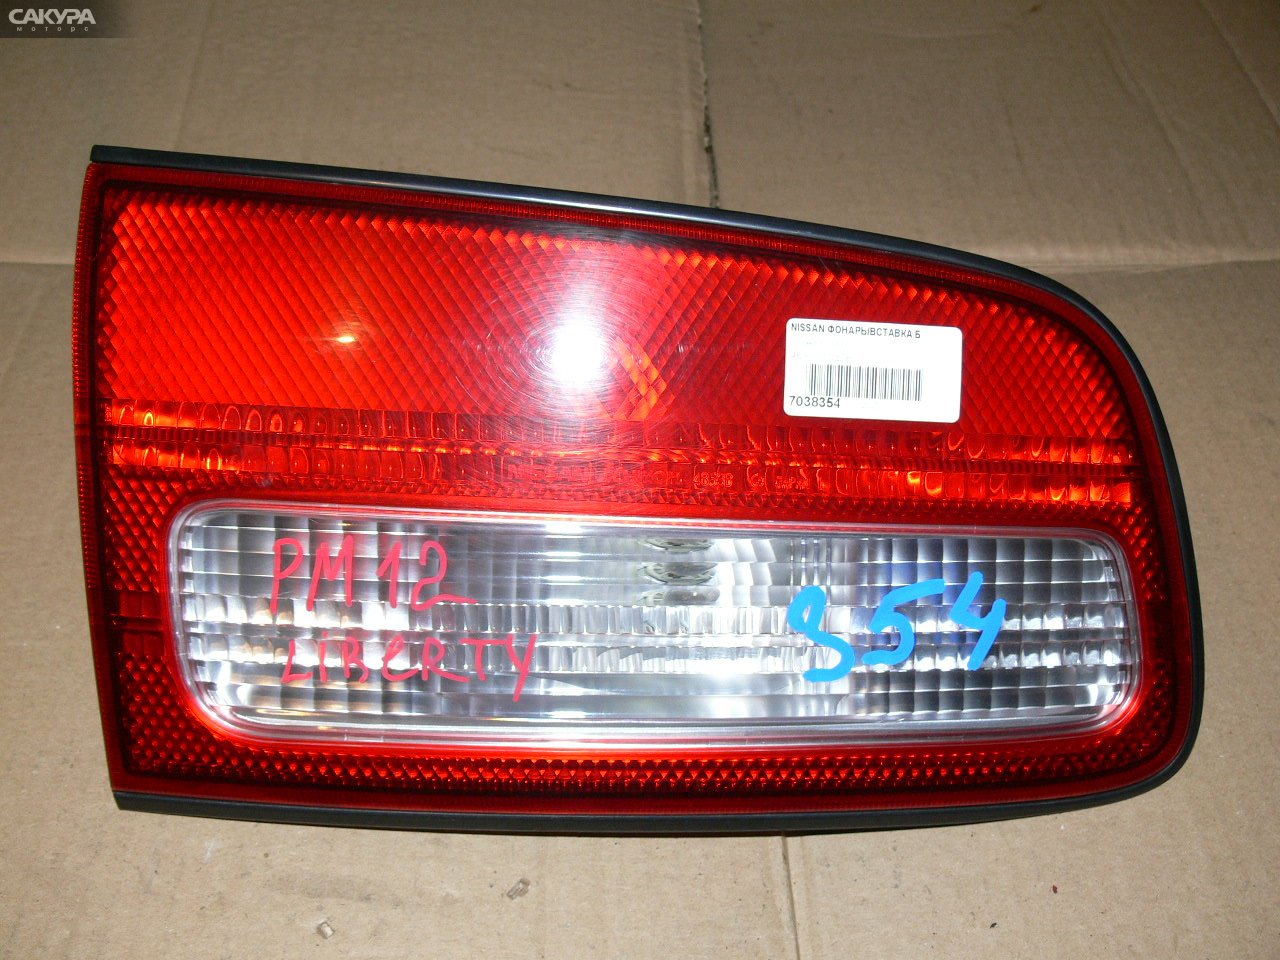 Фонарь вставка багажника левый Nissan Liberty PM12 4853A: купить в Сакура Иркутск.